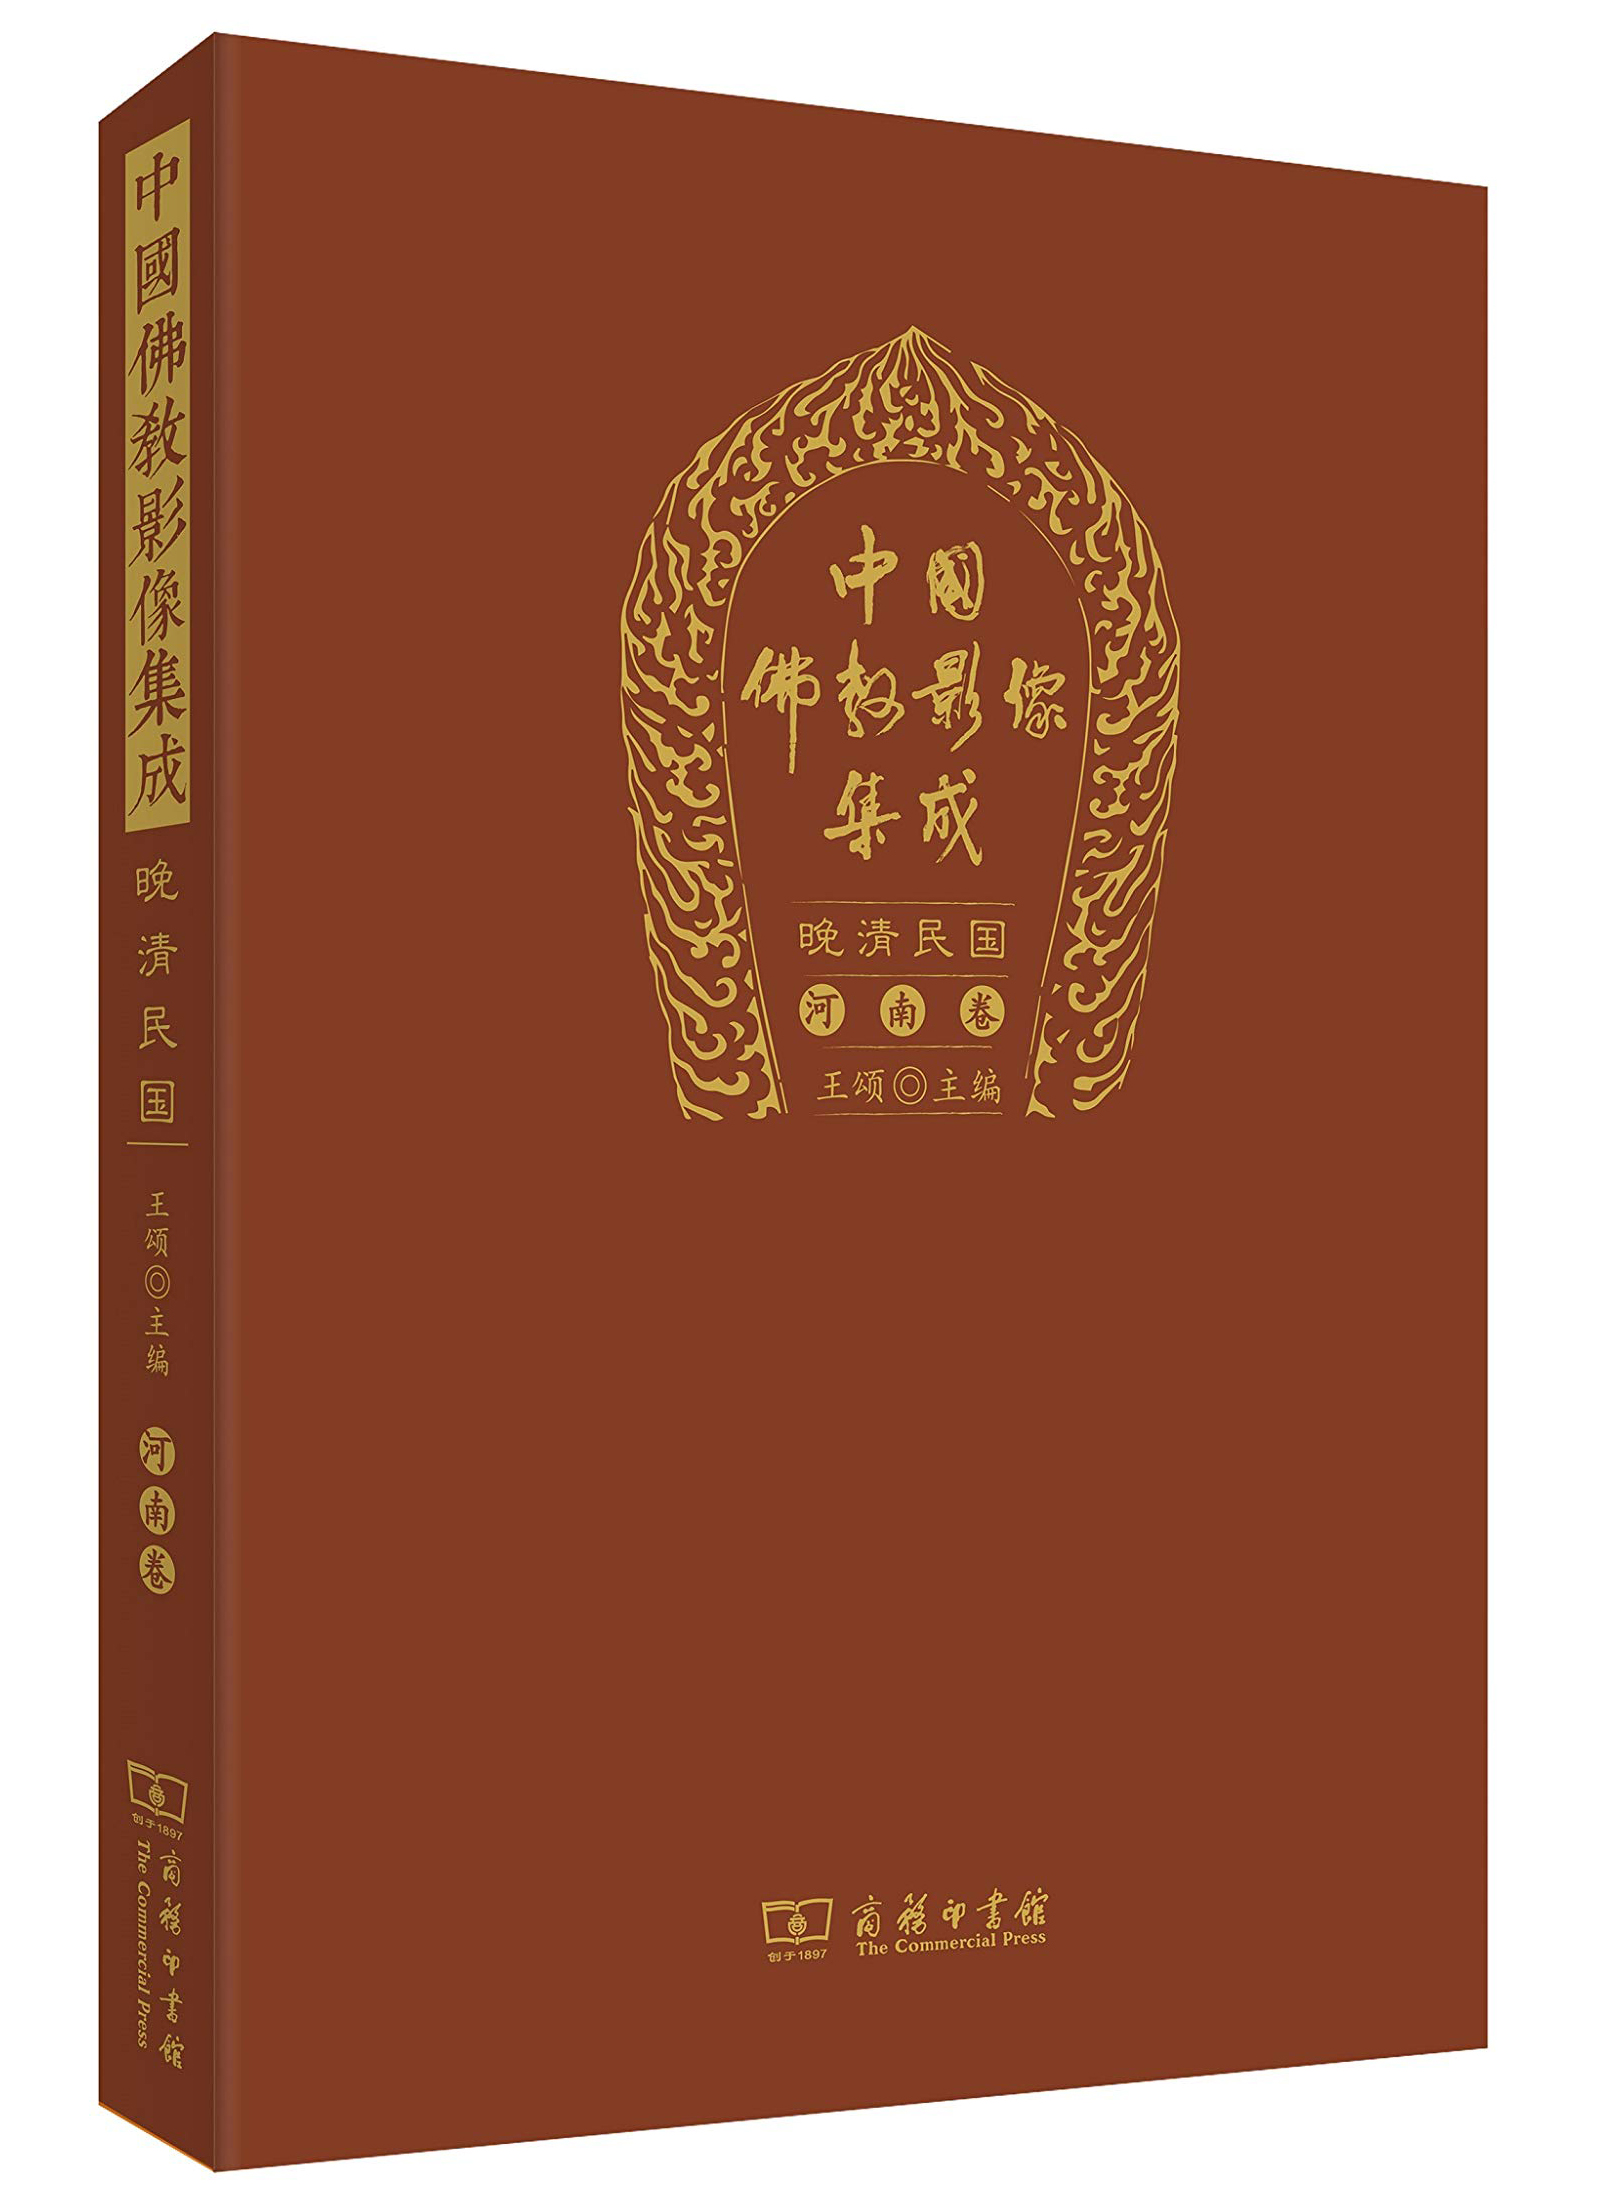 中国佛教影像集成·晚清民国(河南卷)截图